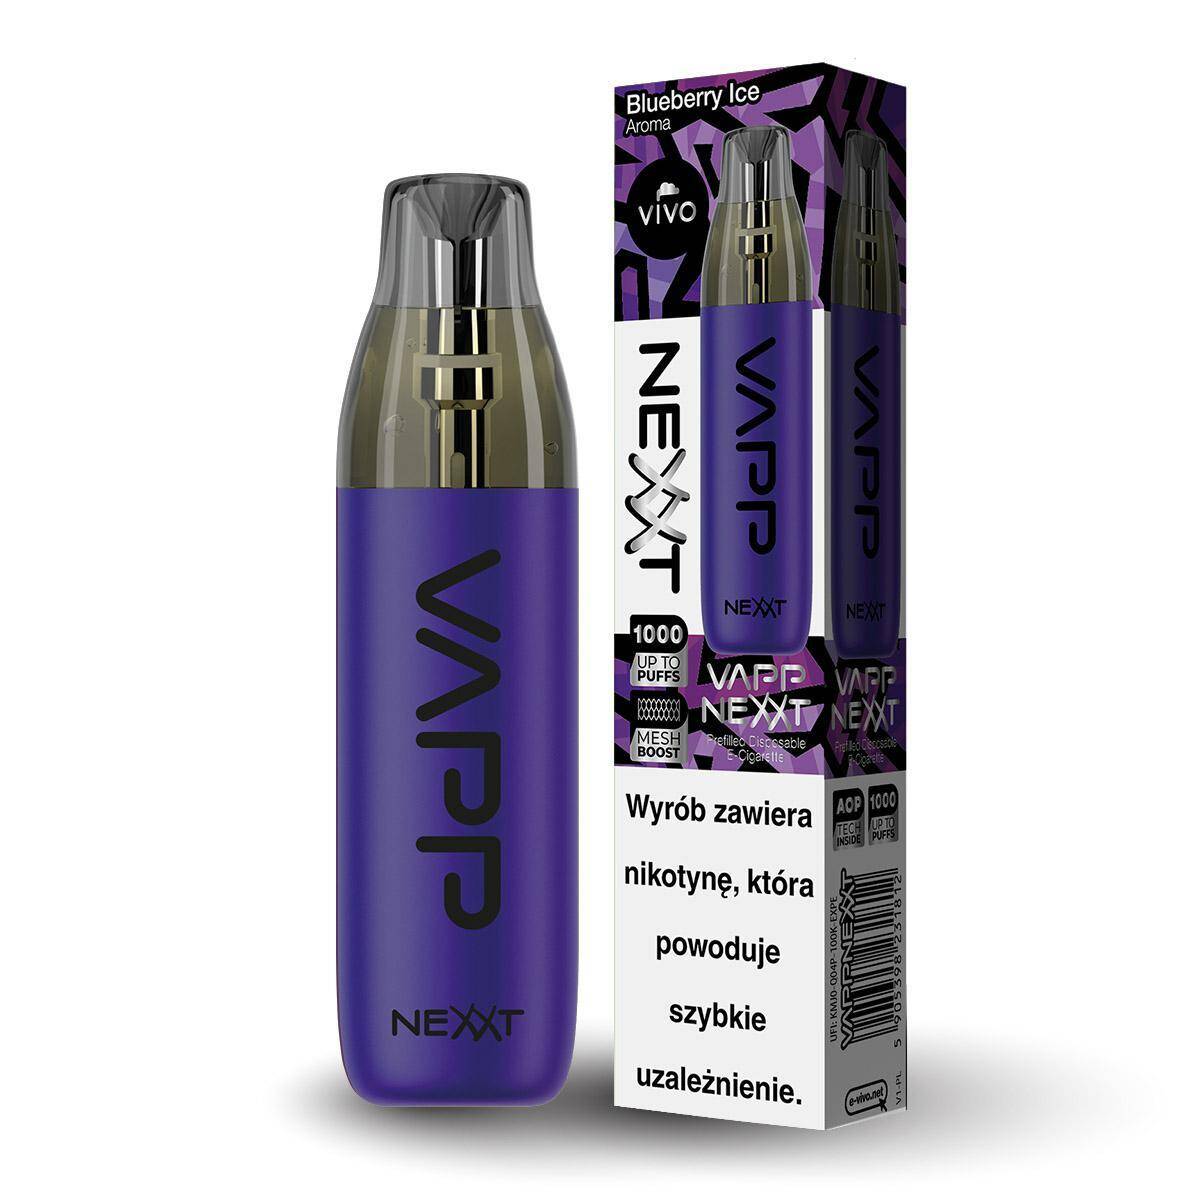 Disposable e-cigarette VIVO Nexxt - Blueberry Ice 20mg